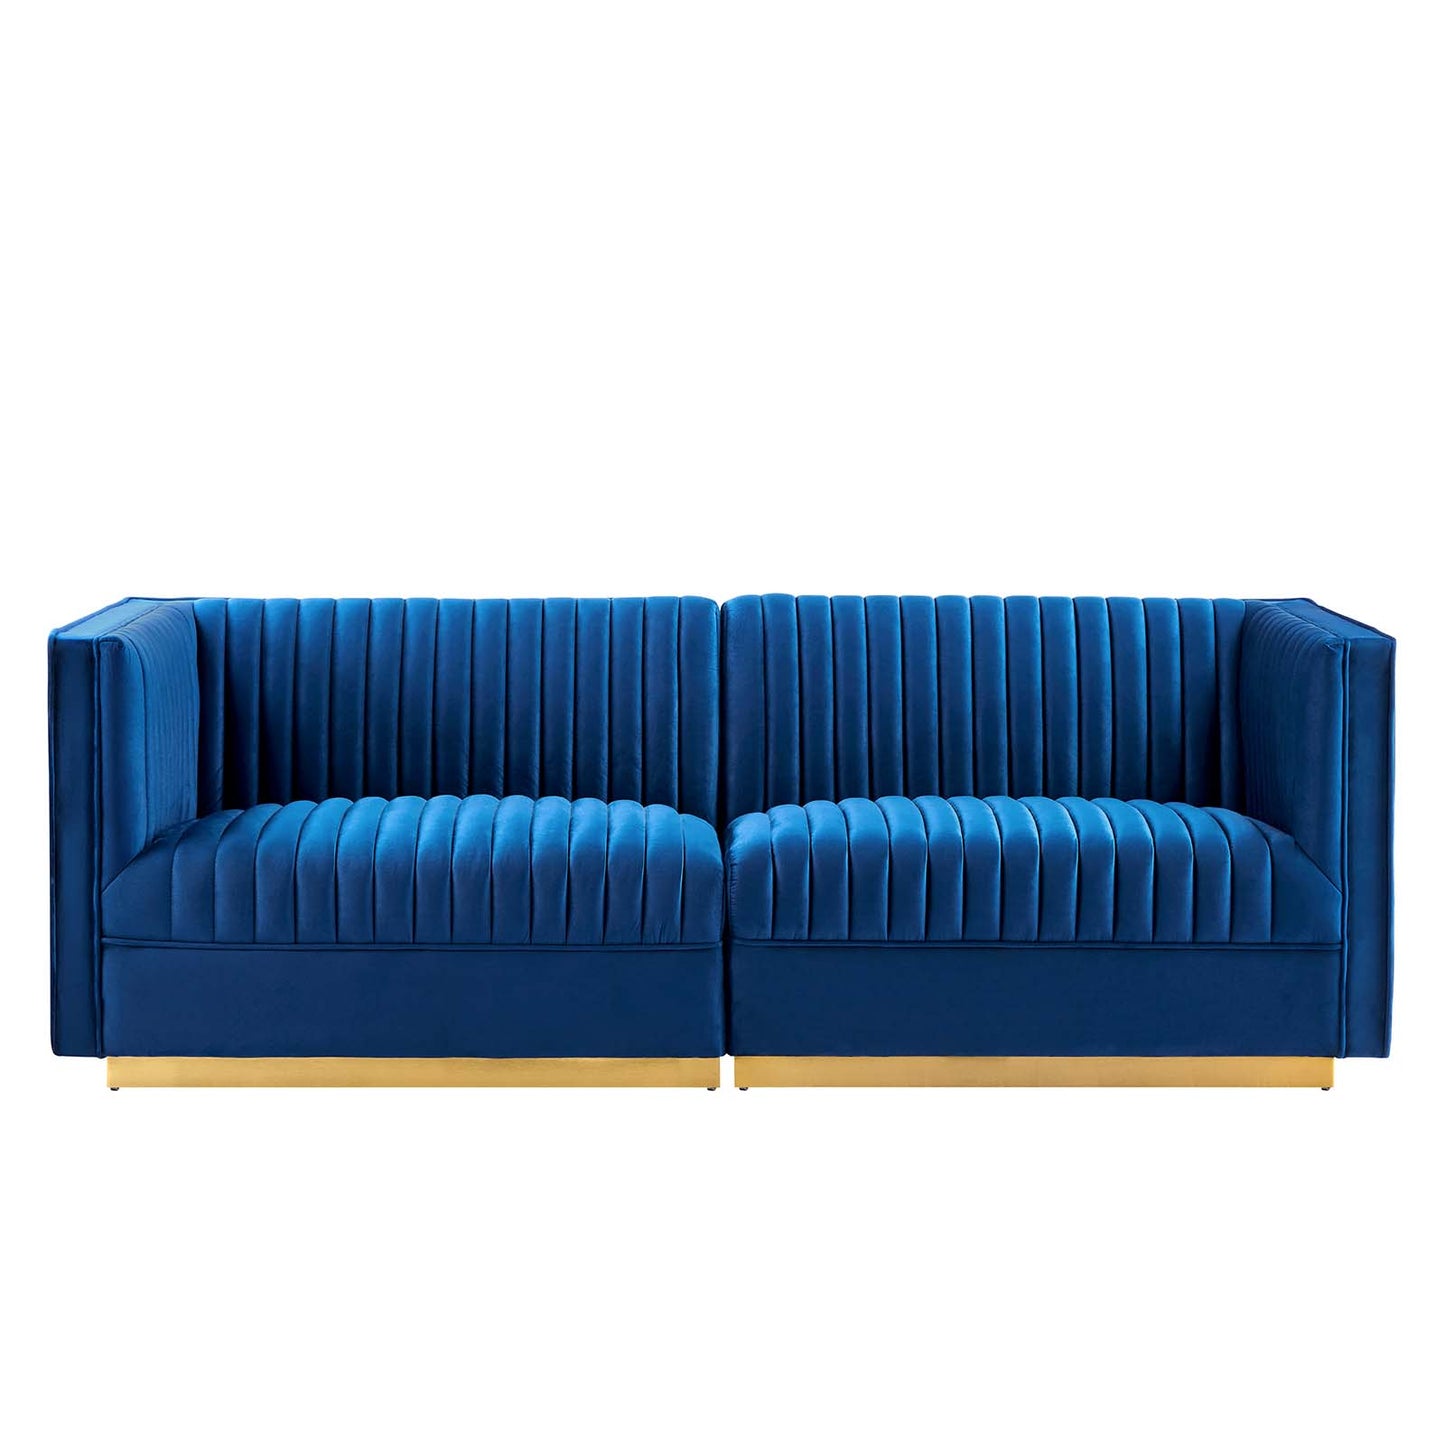 Sanguine Channel Tufted Performance Velvet Modular Sectional Sofa Loveseat By Modway - EEI-5824 | Loveseats | Modishstore - 22